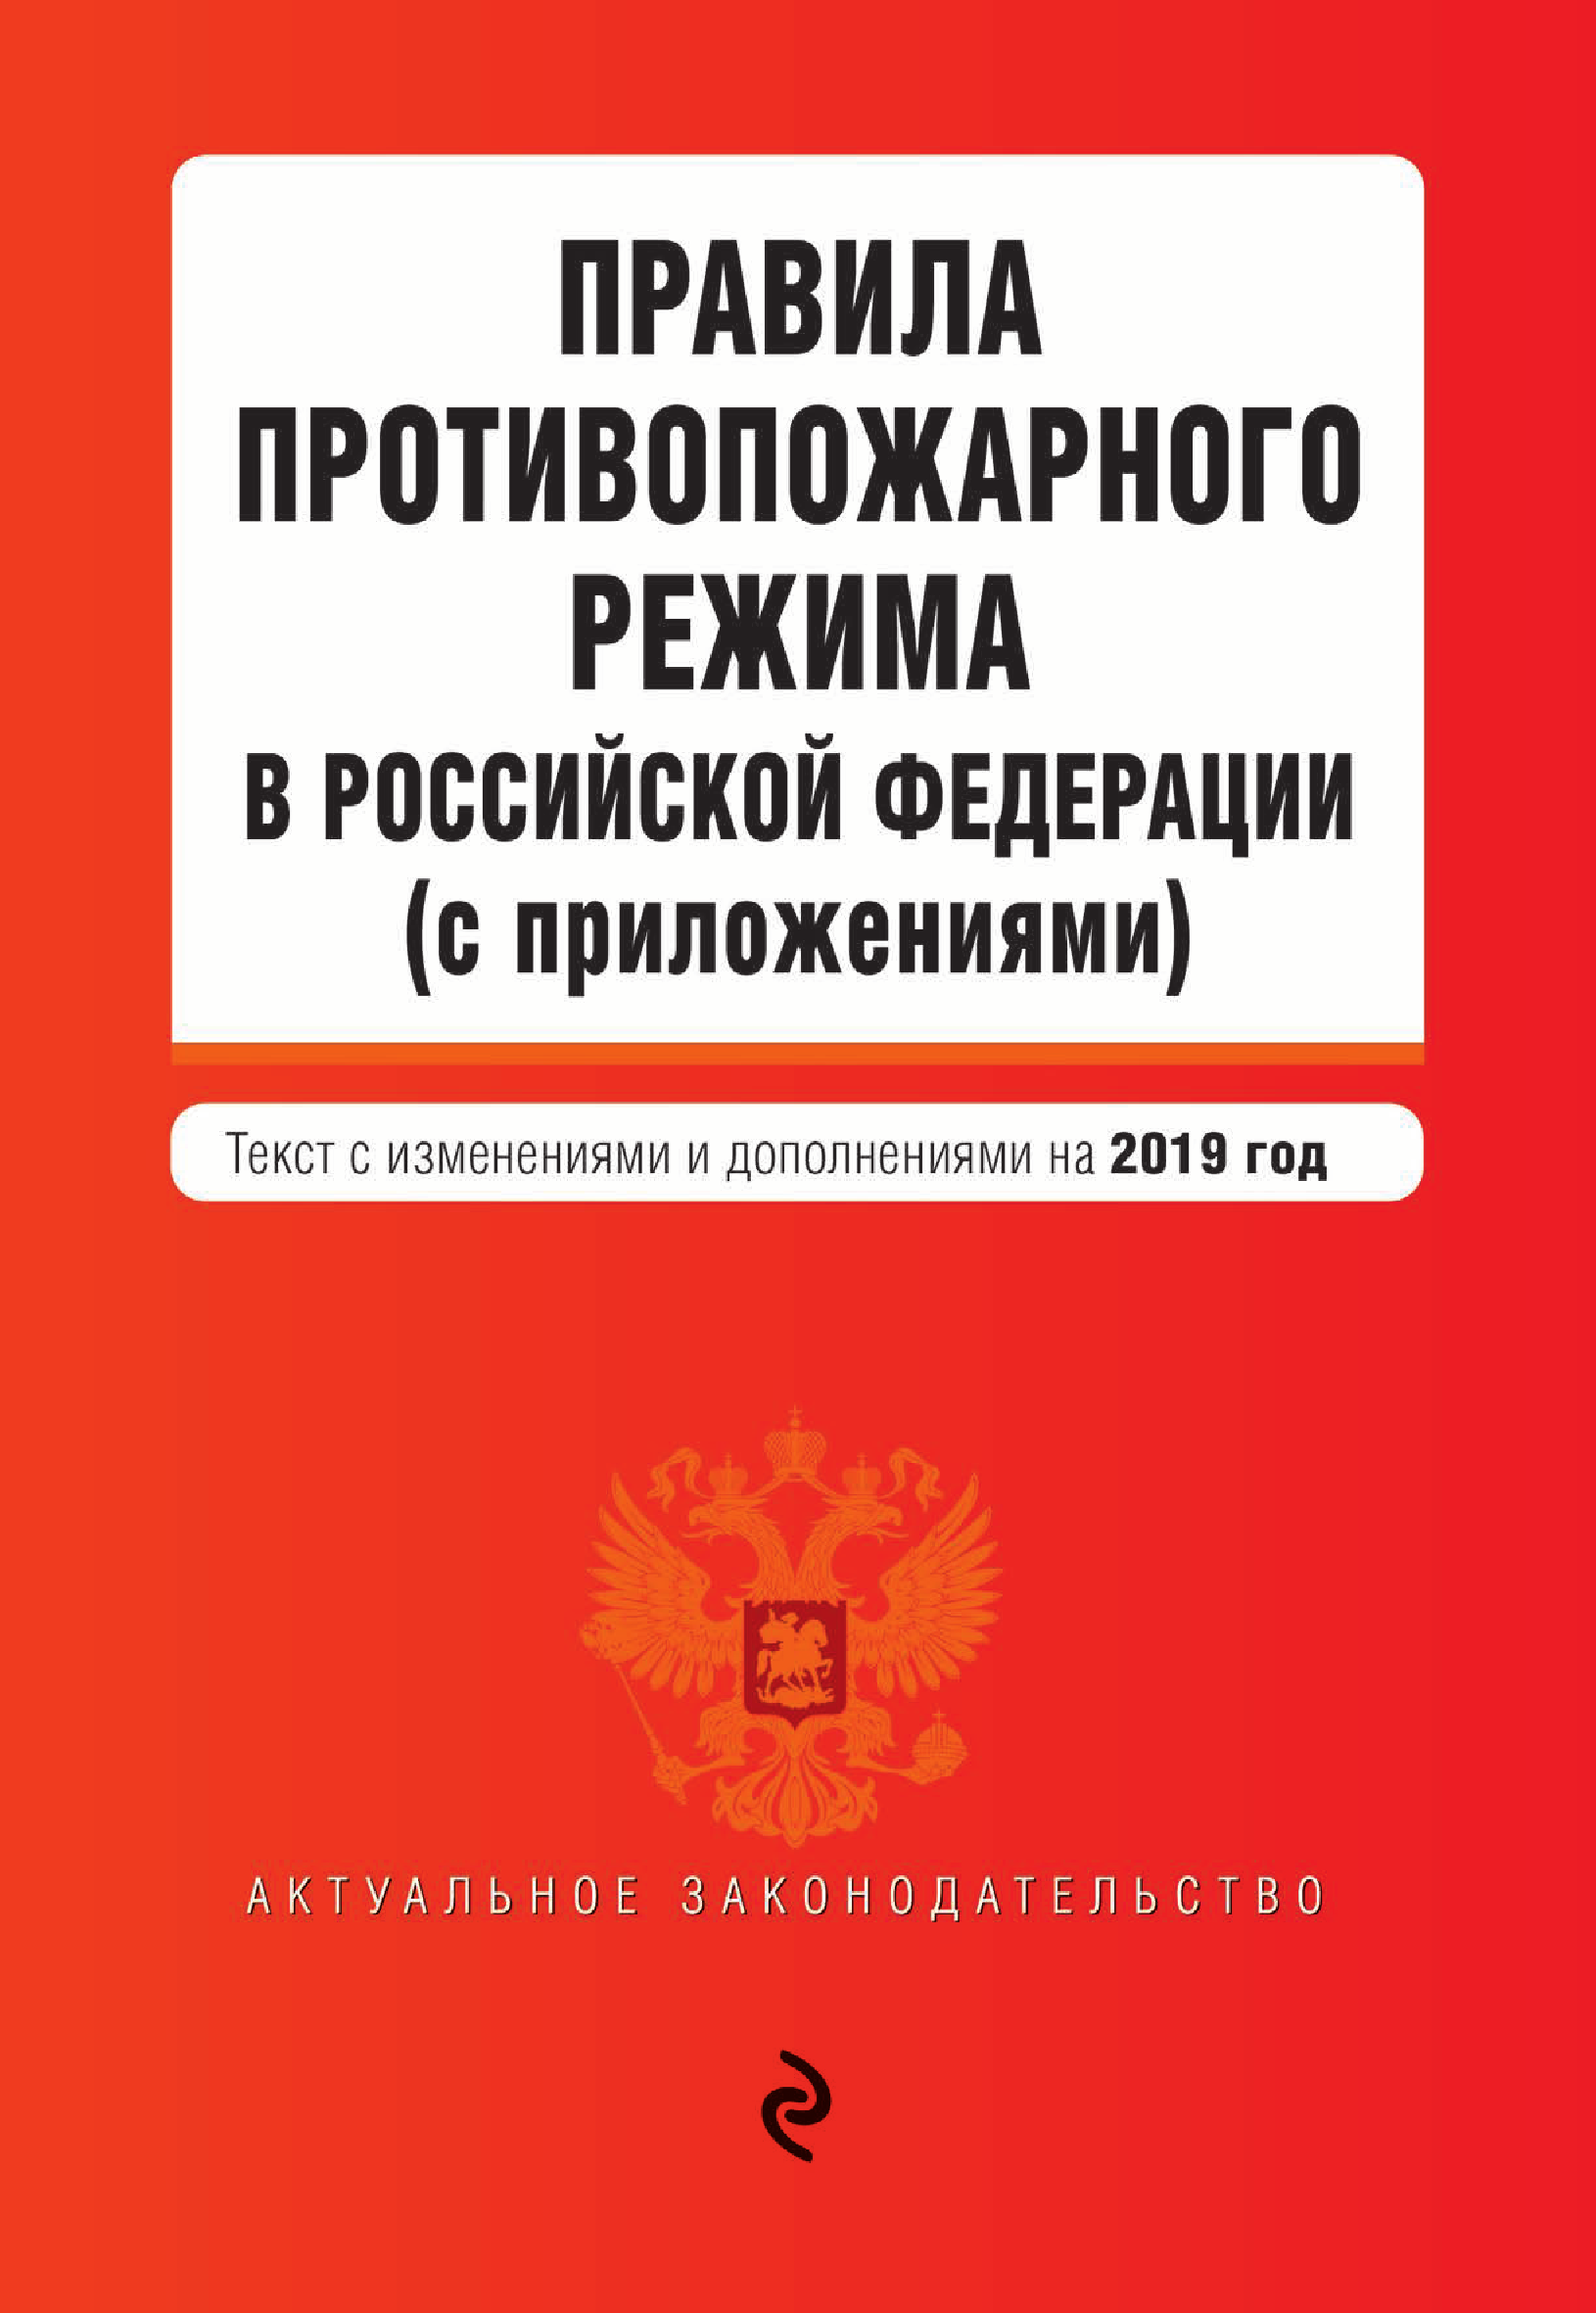 Правила противопожарного режима в Российской Федерации (с приложениями). Текст с последними изменениями и дополнениями на 2019 год